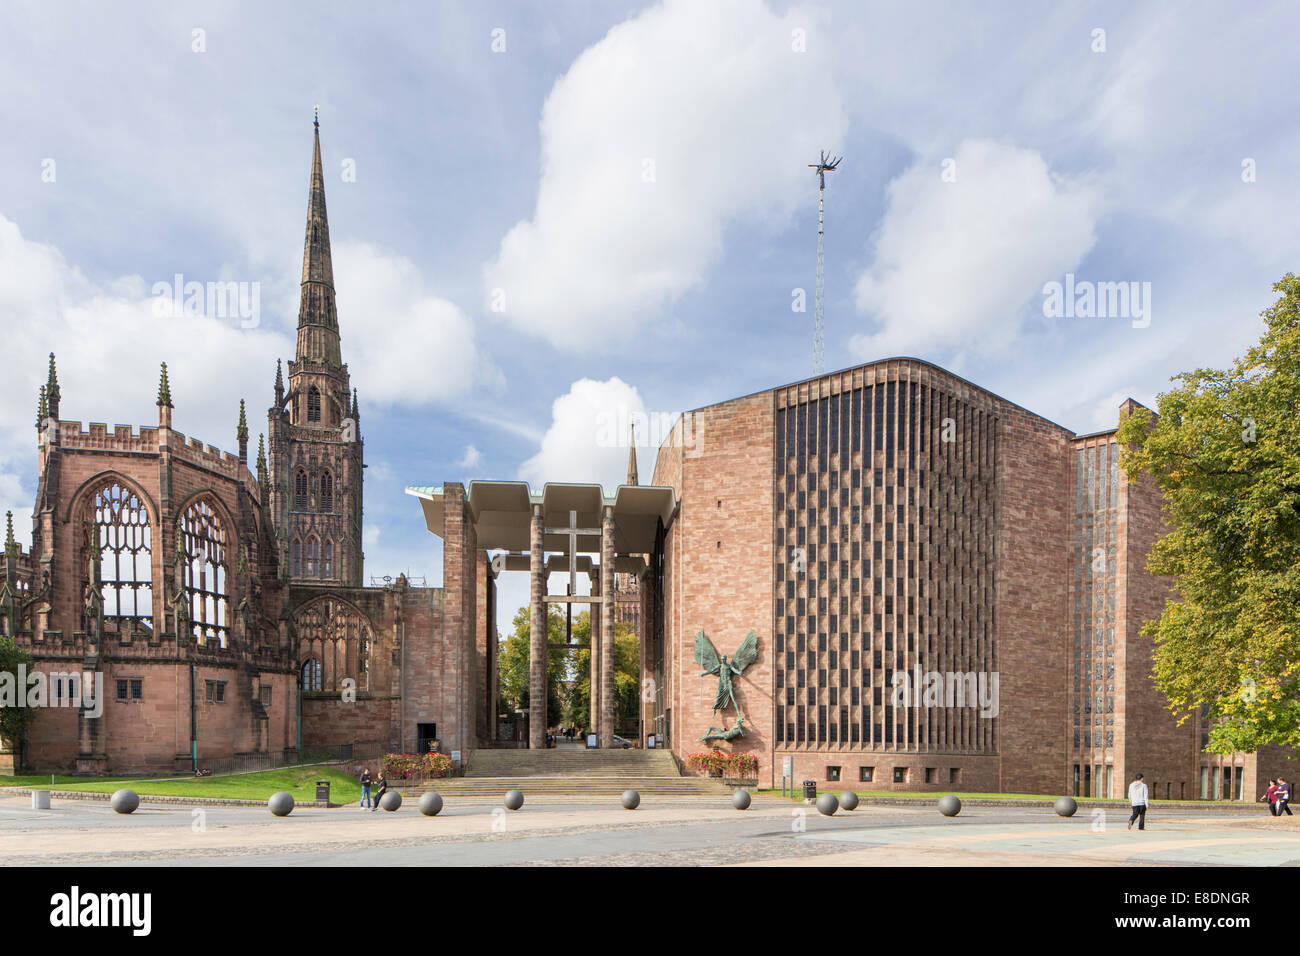 Les ruines de l'ancien et le nouveau St Michael's Cathedral, Coventry, Warwickshire, England, UK Banque D'Images